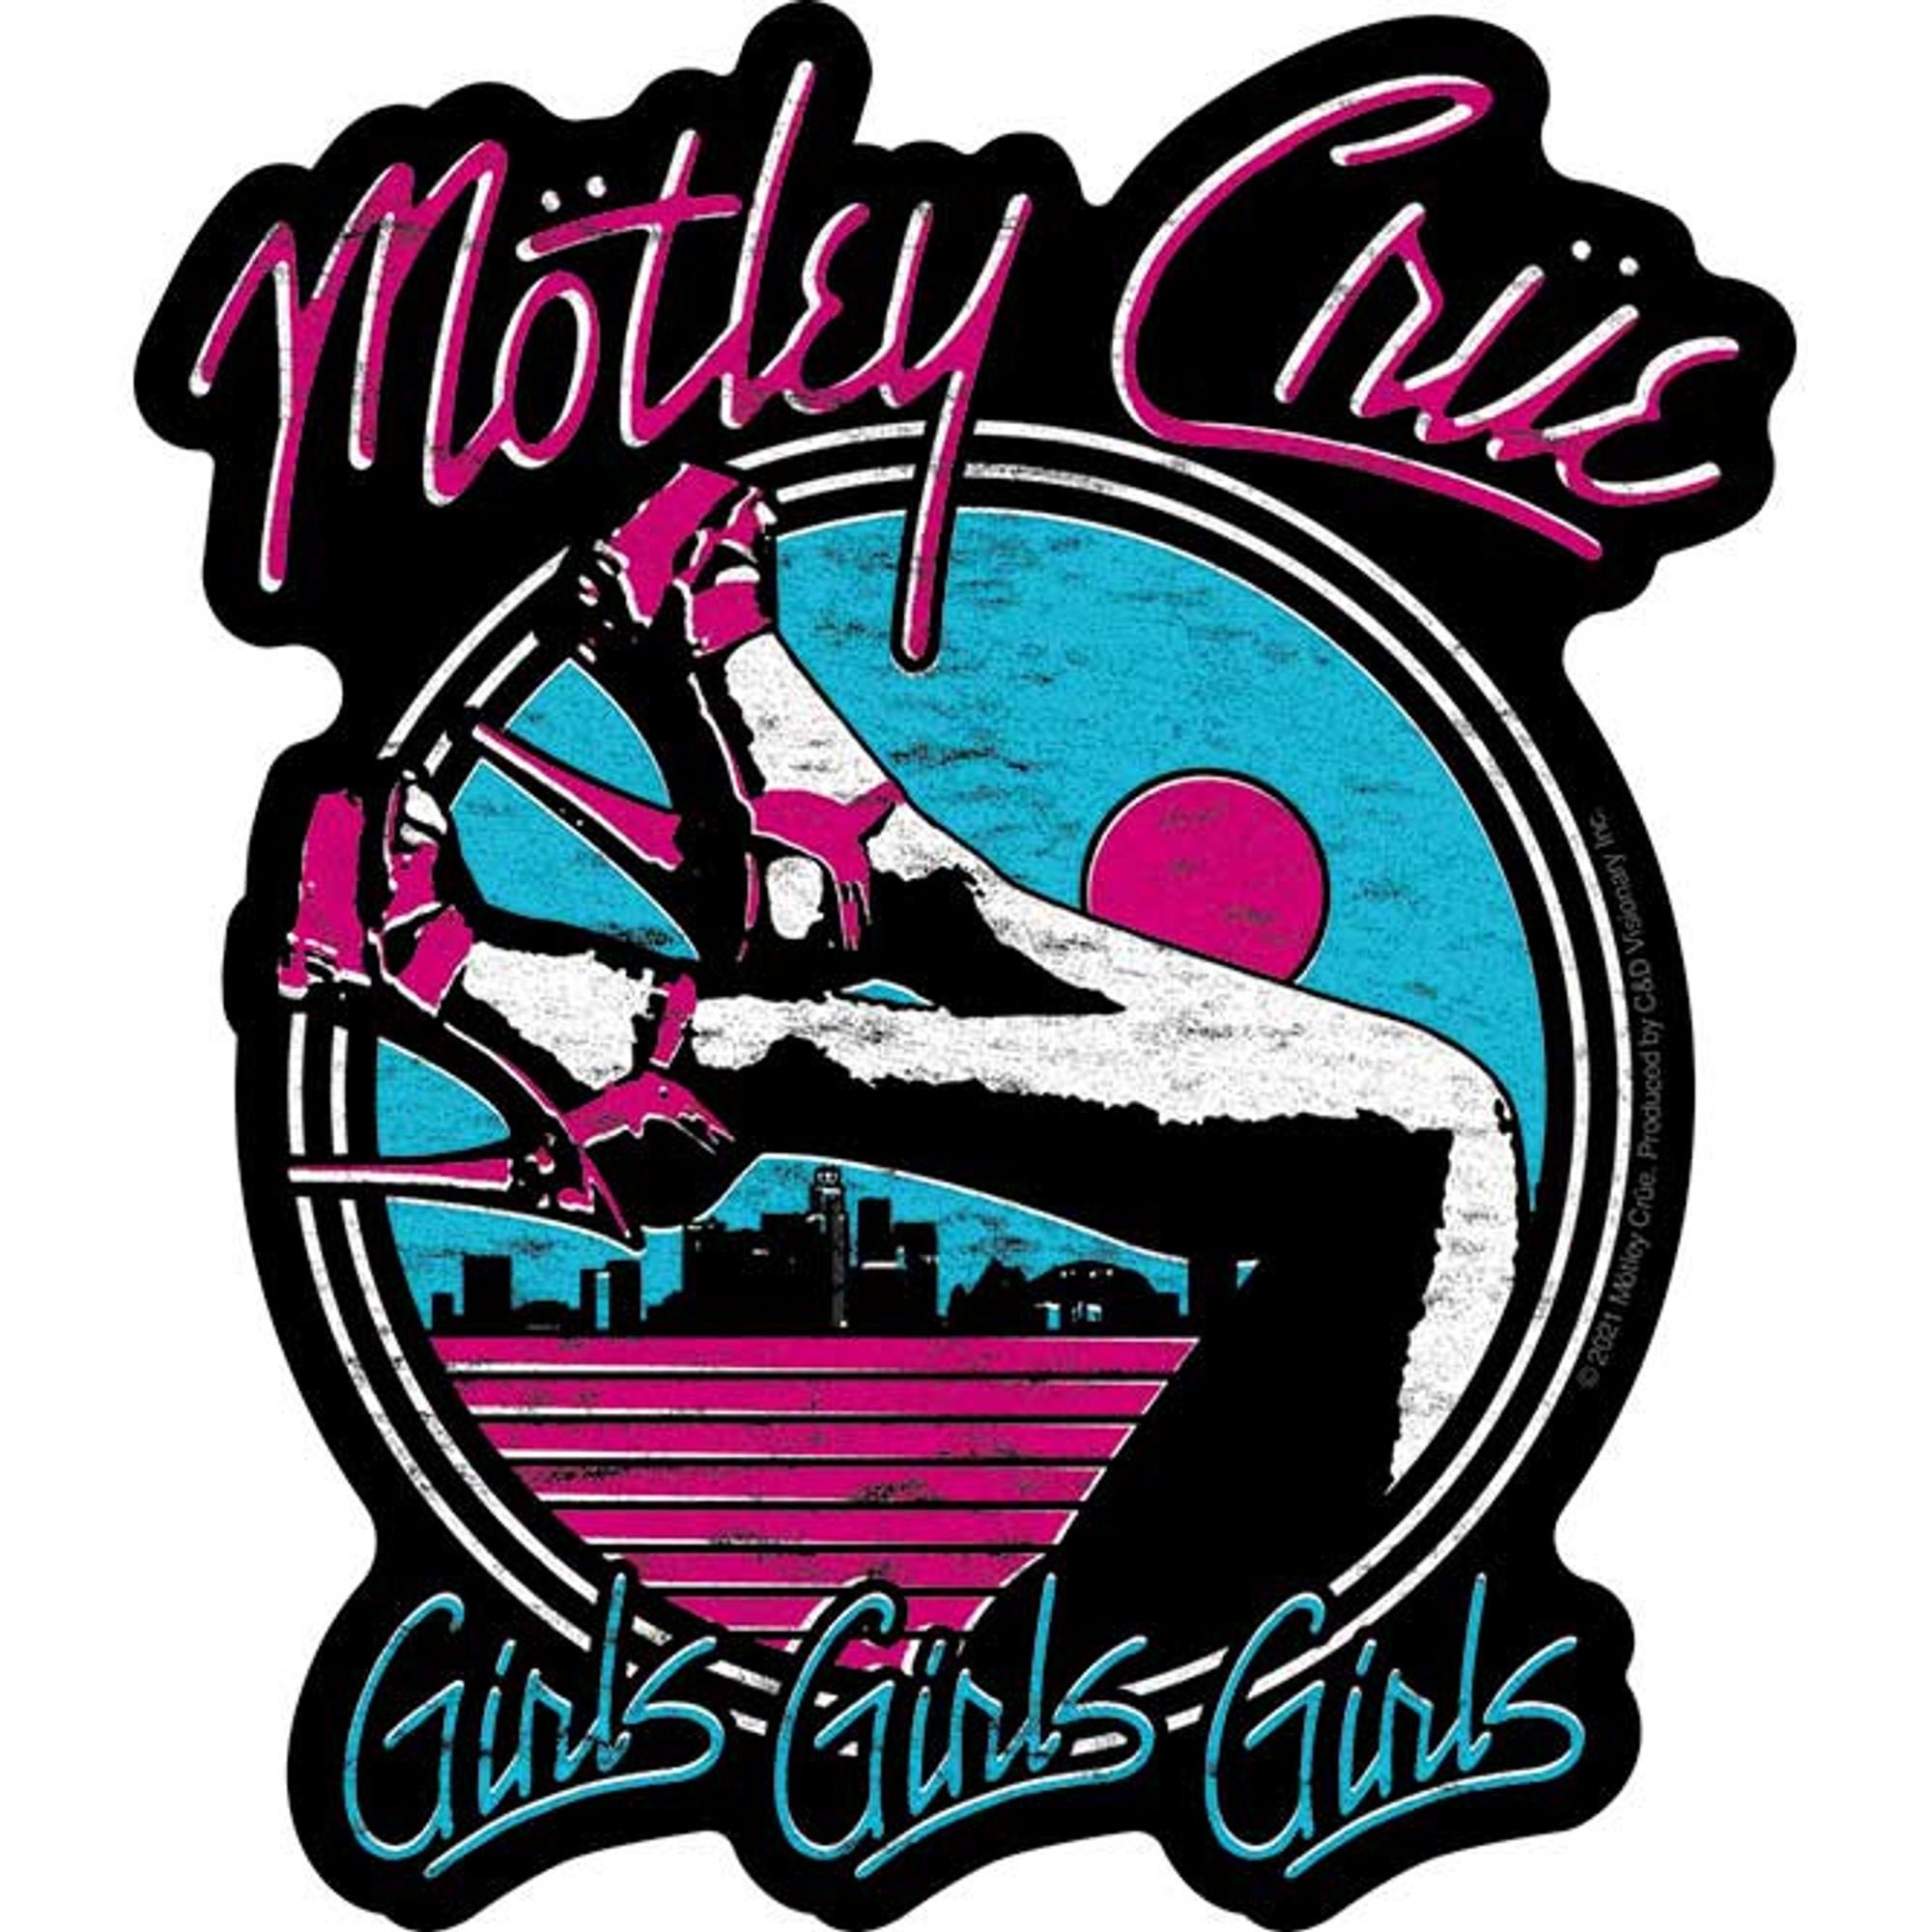 Motley Crue "Girls Girls Girls" Vinyl Sticker, Officially Licensed Band Merchandise, Rock Stickers